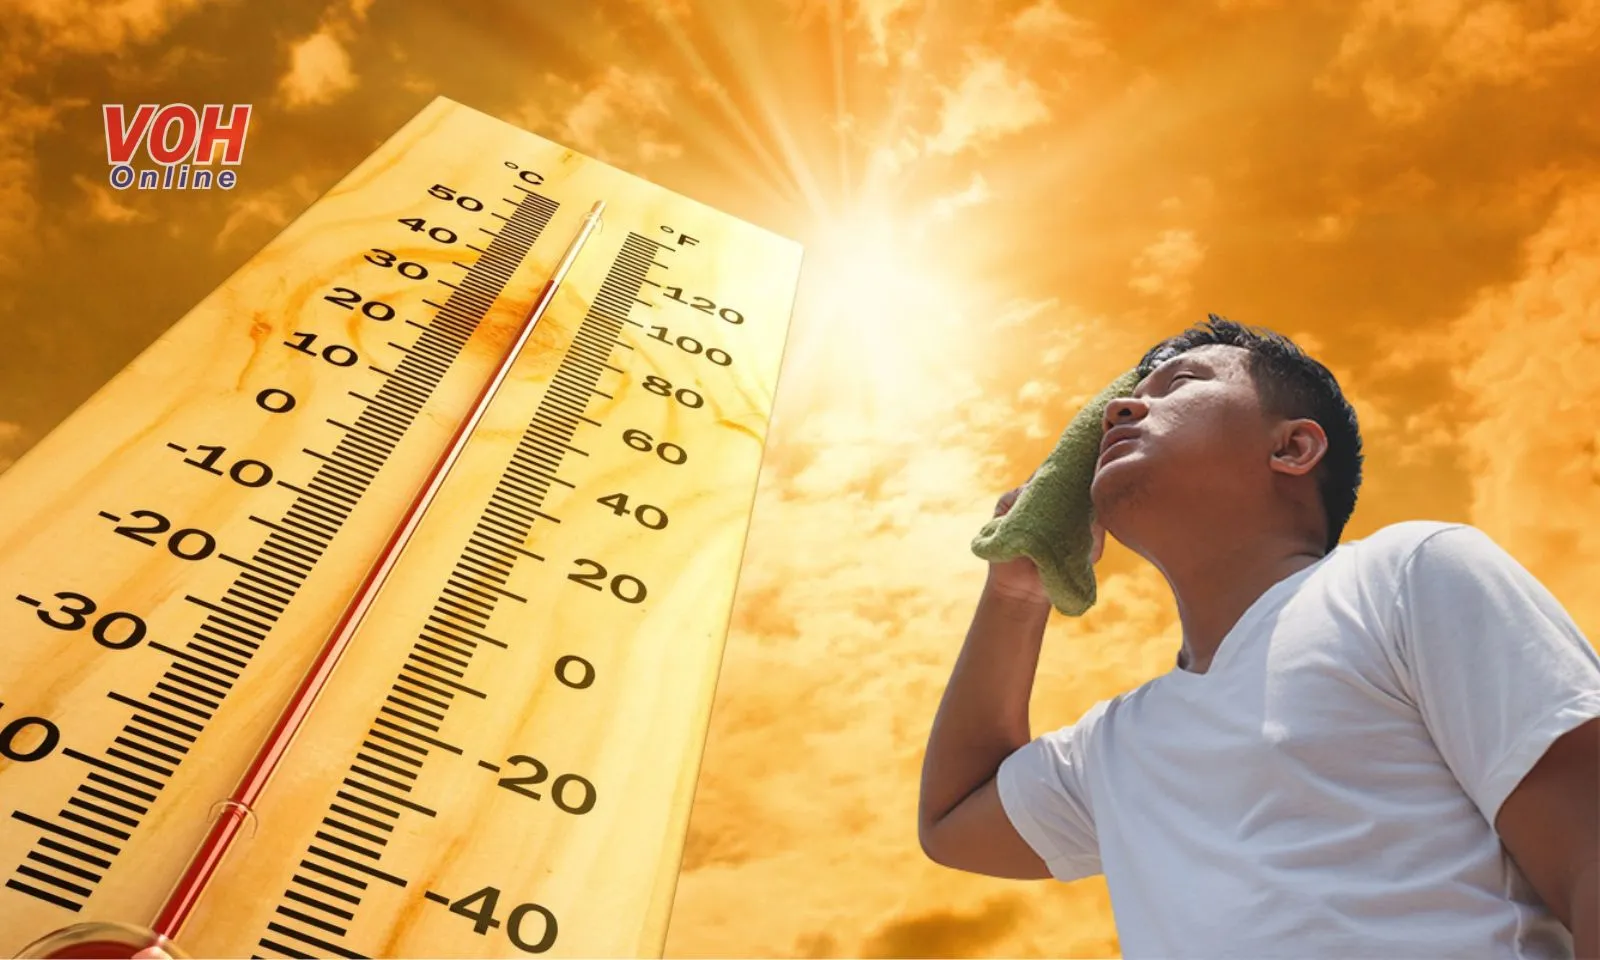 Thời tiết nắng nóng là “điều kiện” để bệnh viêm não tăng cao?